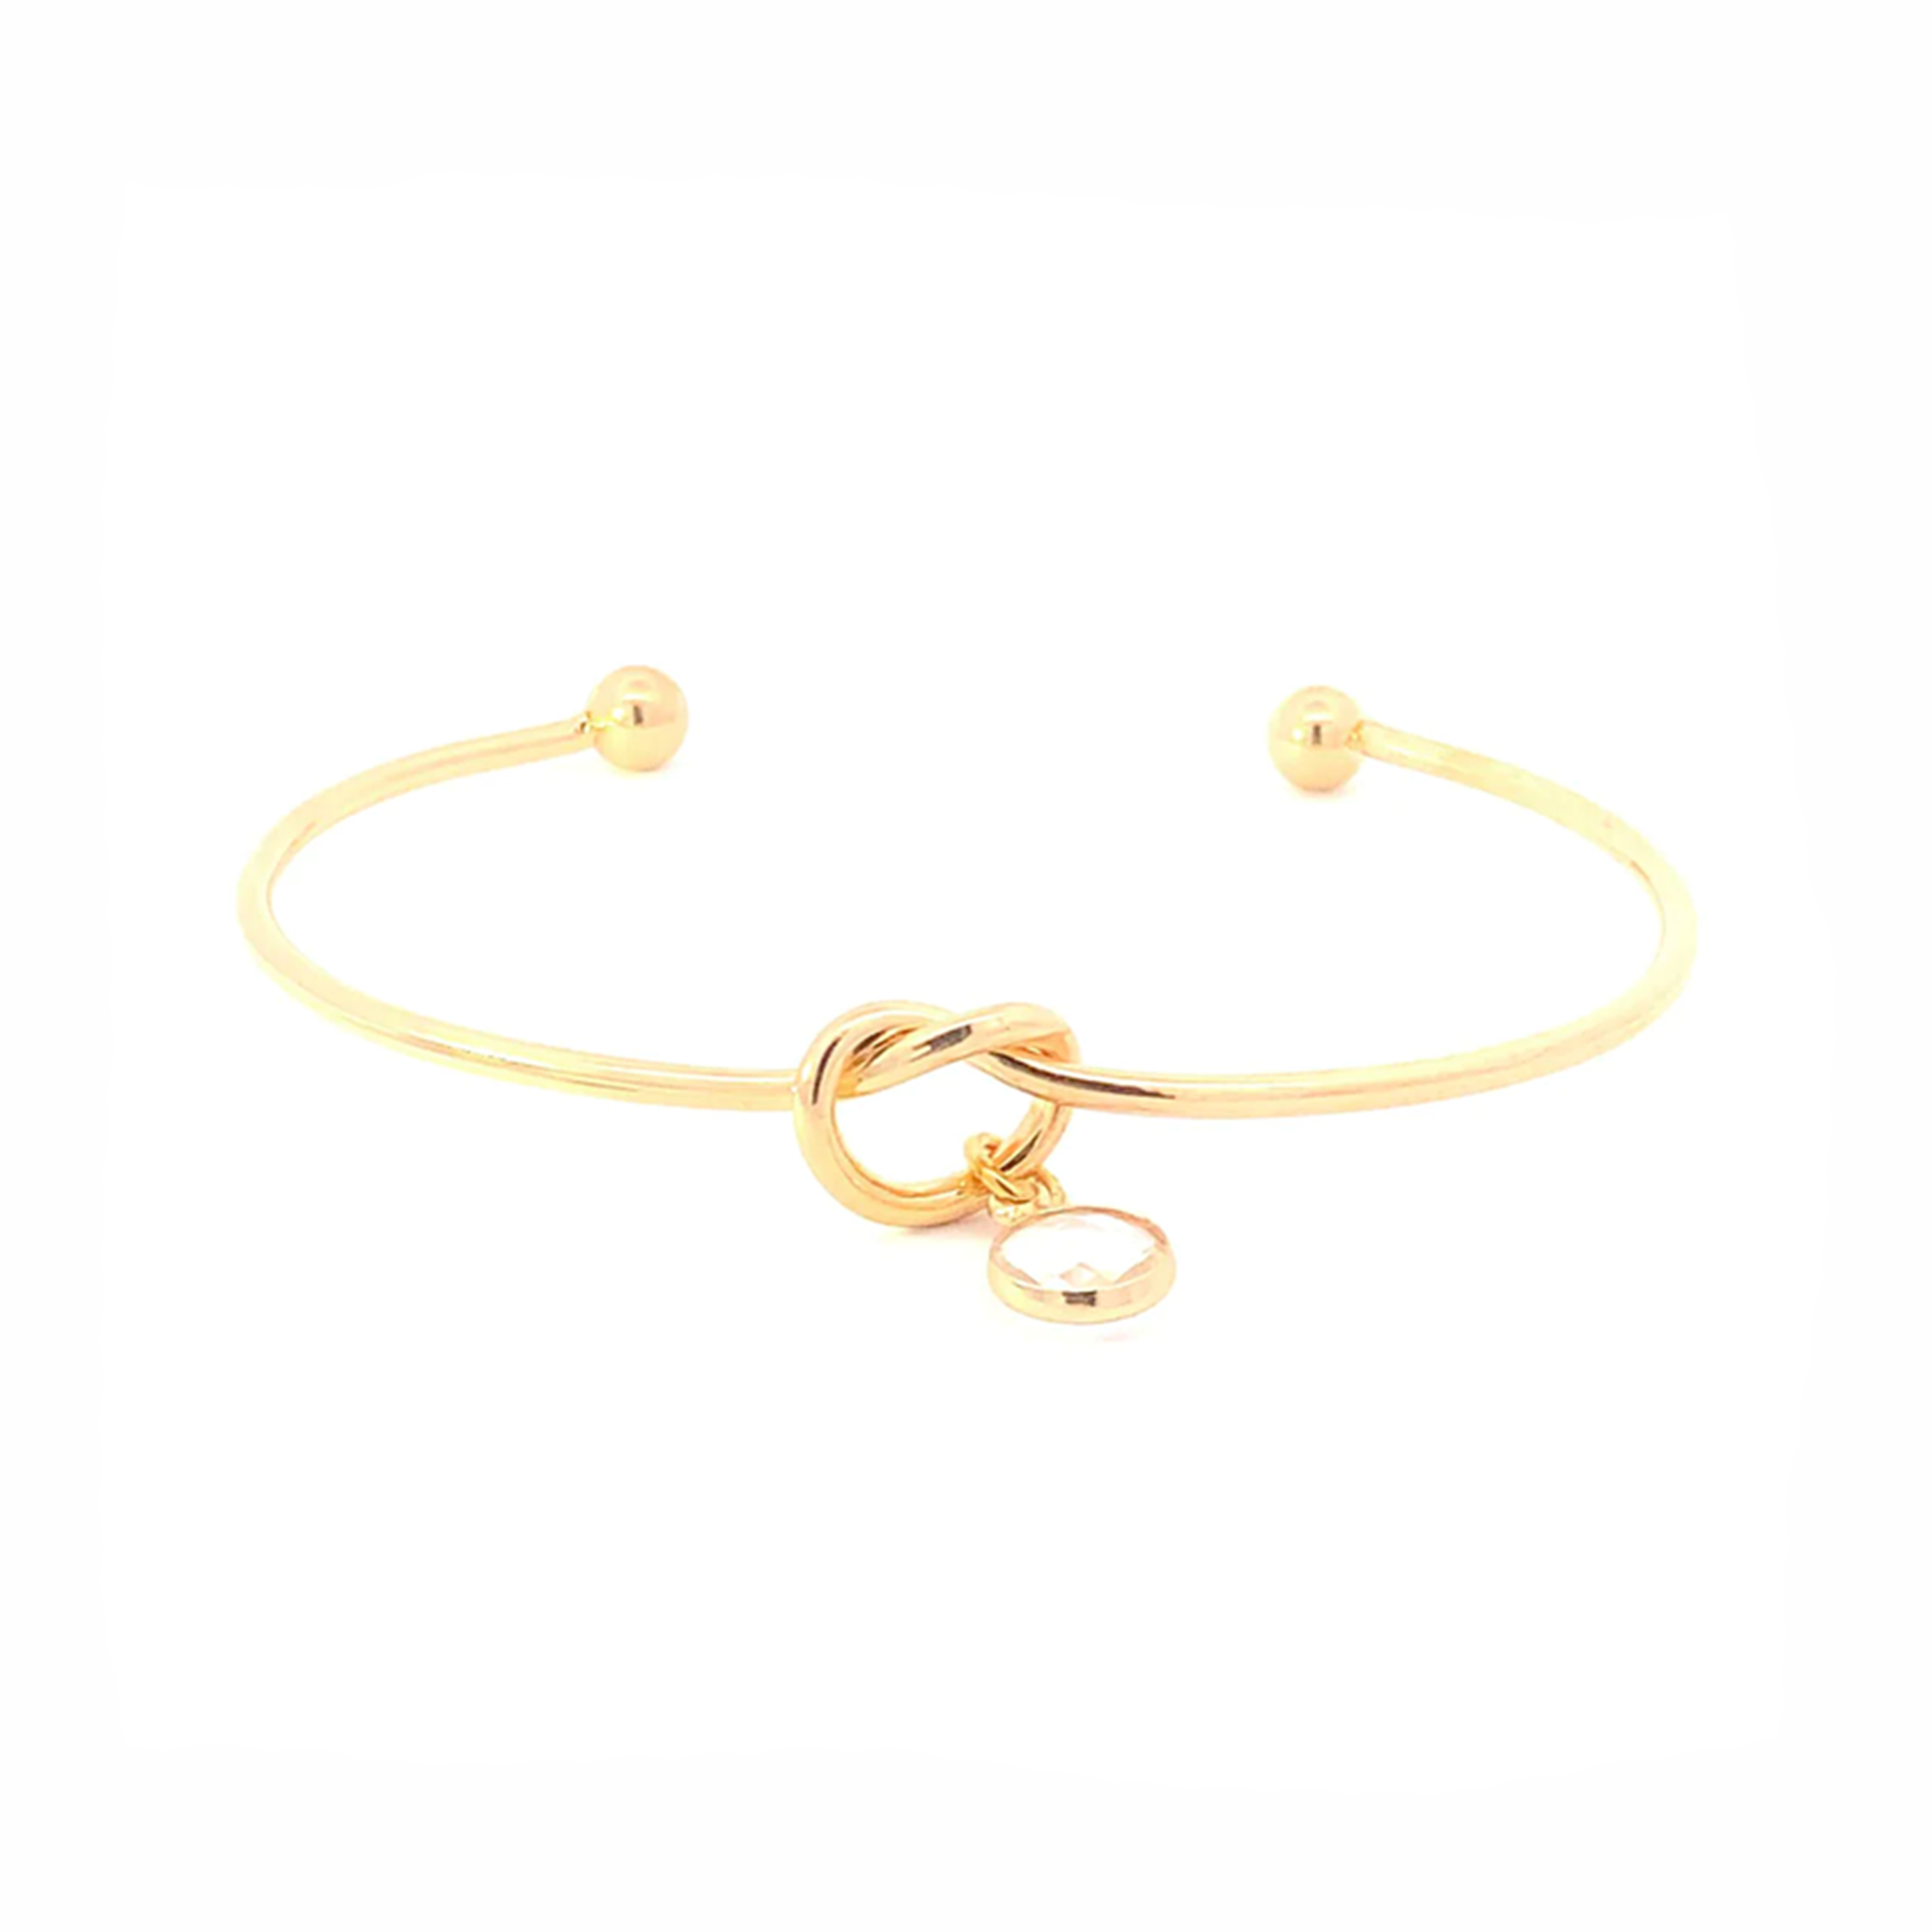 April birthstone knot bracelet gold